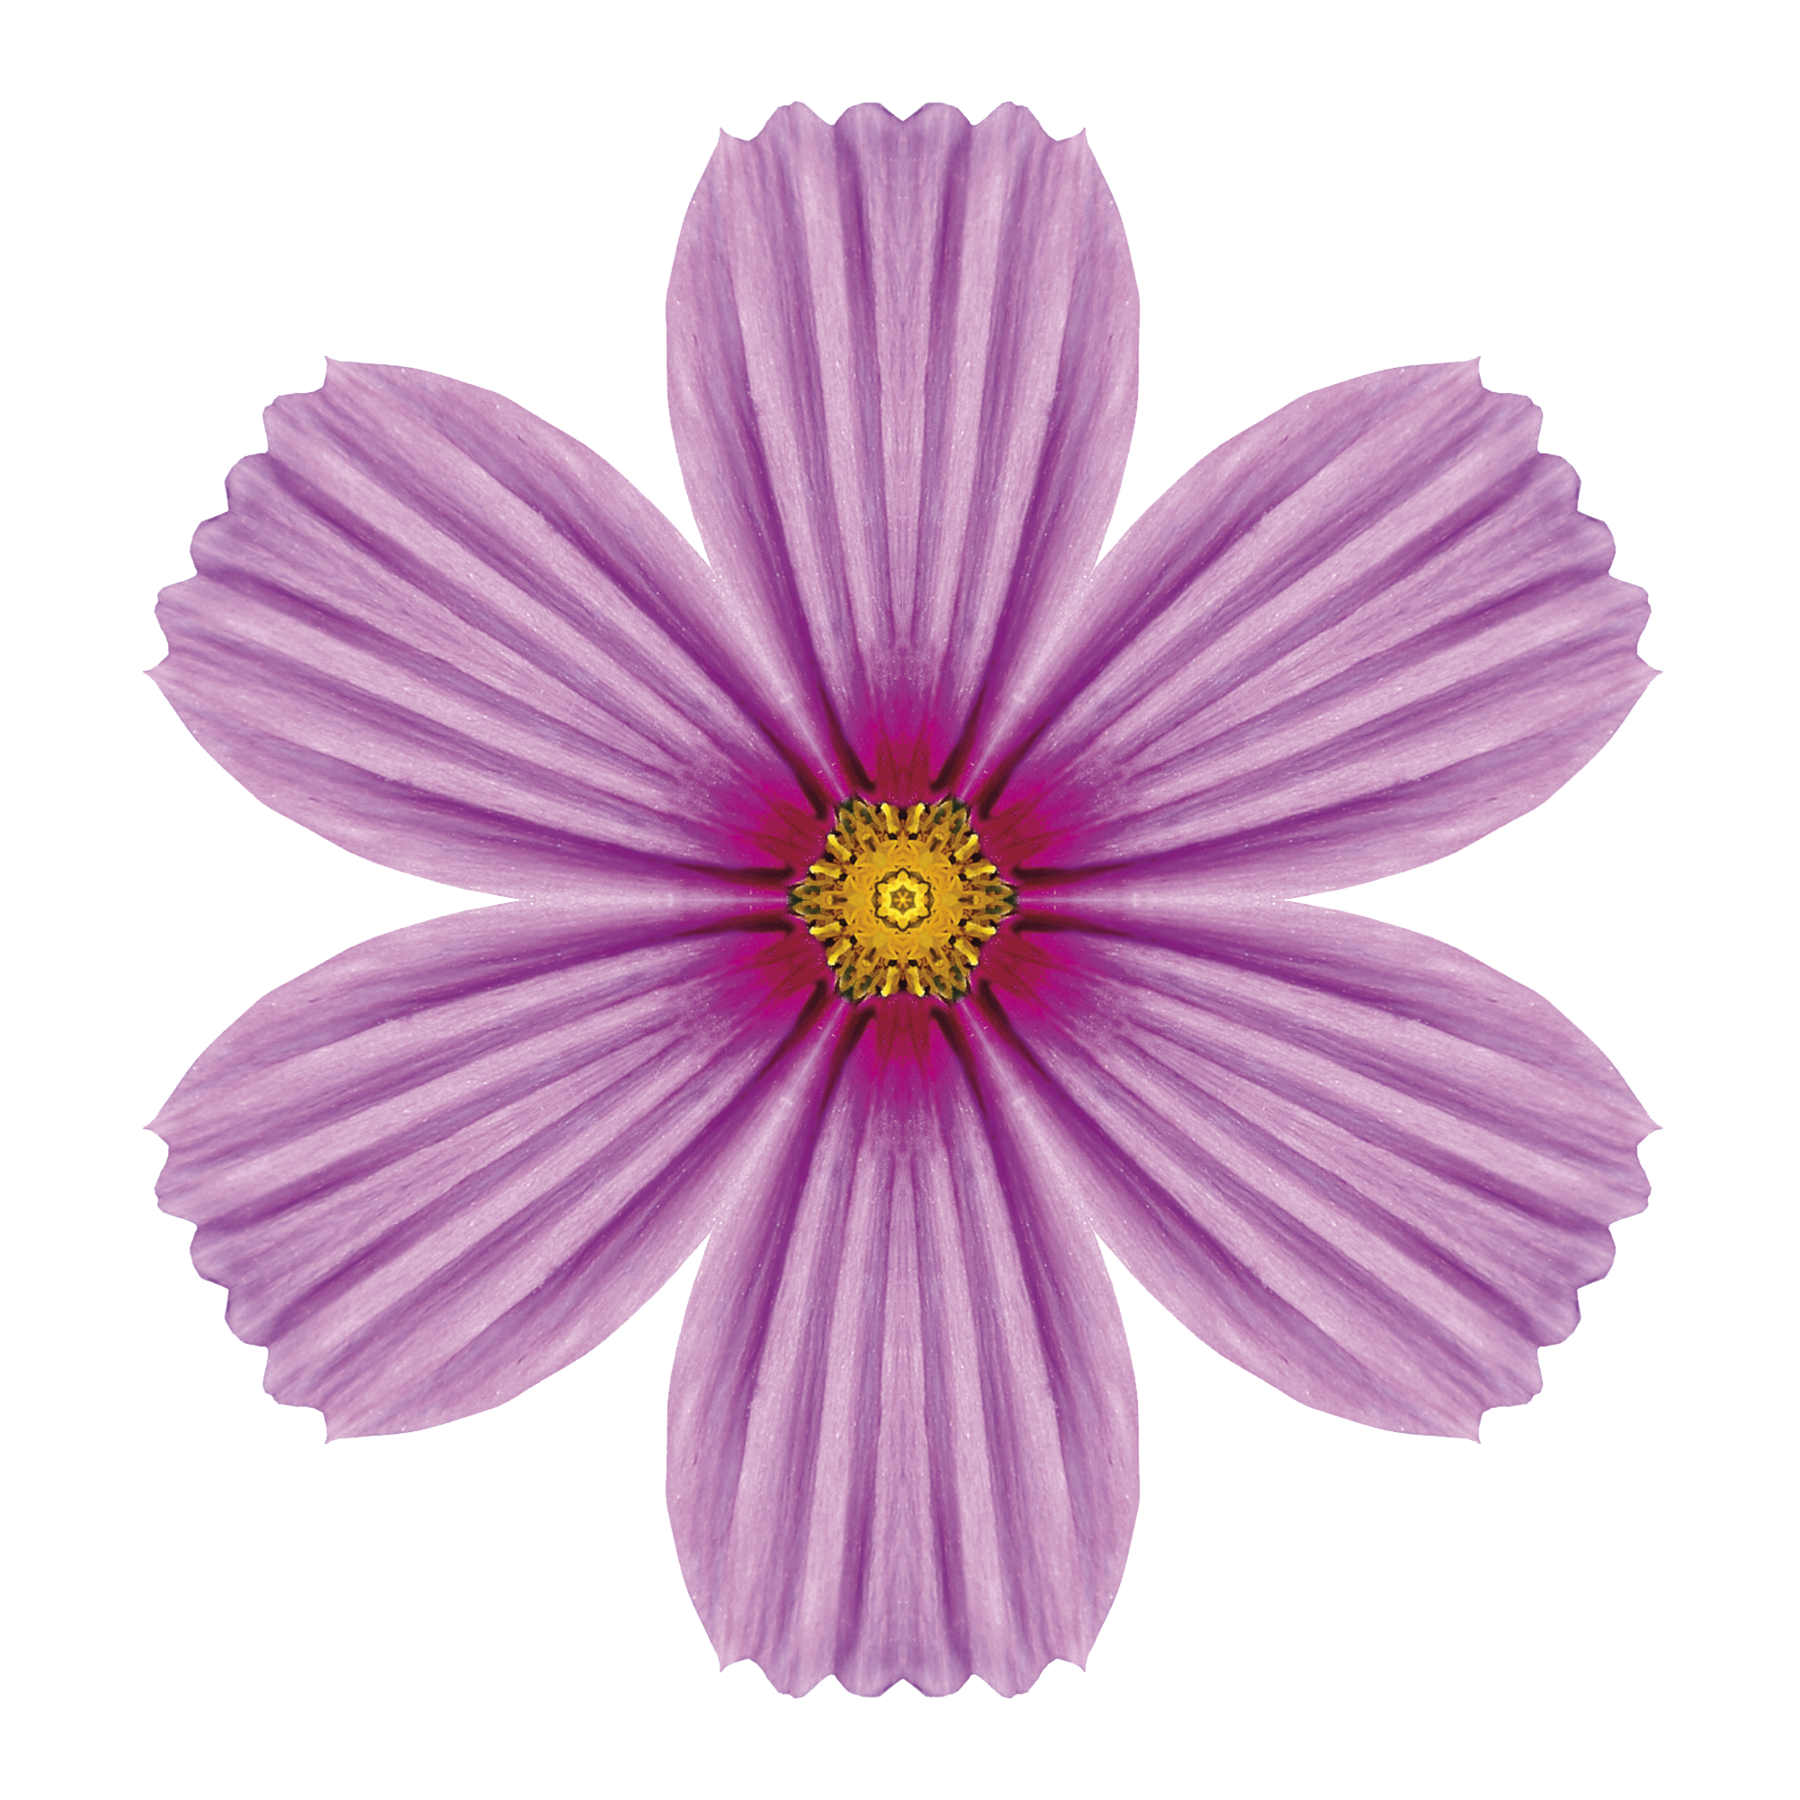 Ilustração. Flor rosa com 6 pétalas, vista de cima. No centro, há pólen, identificando por um pequeno círculo amarelo.